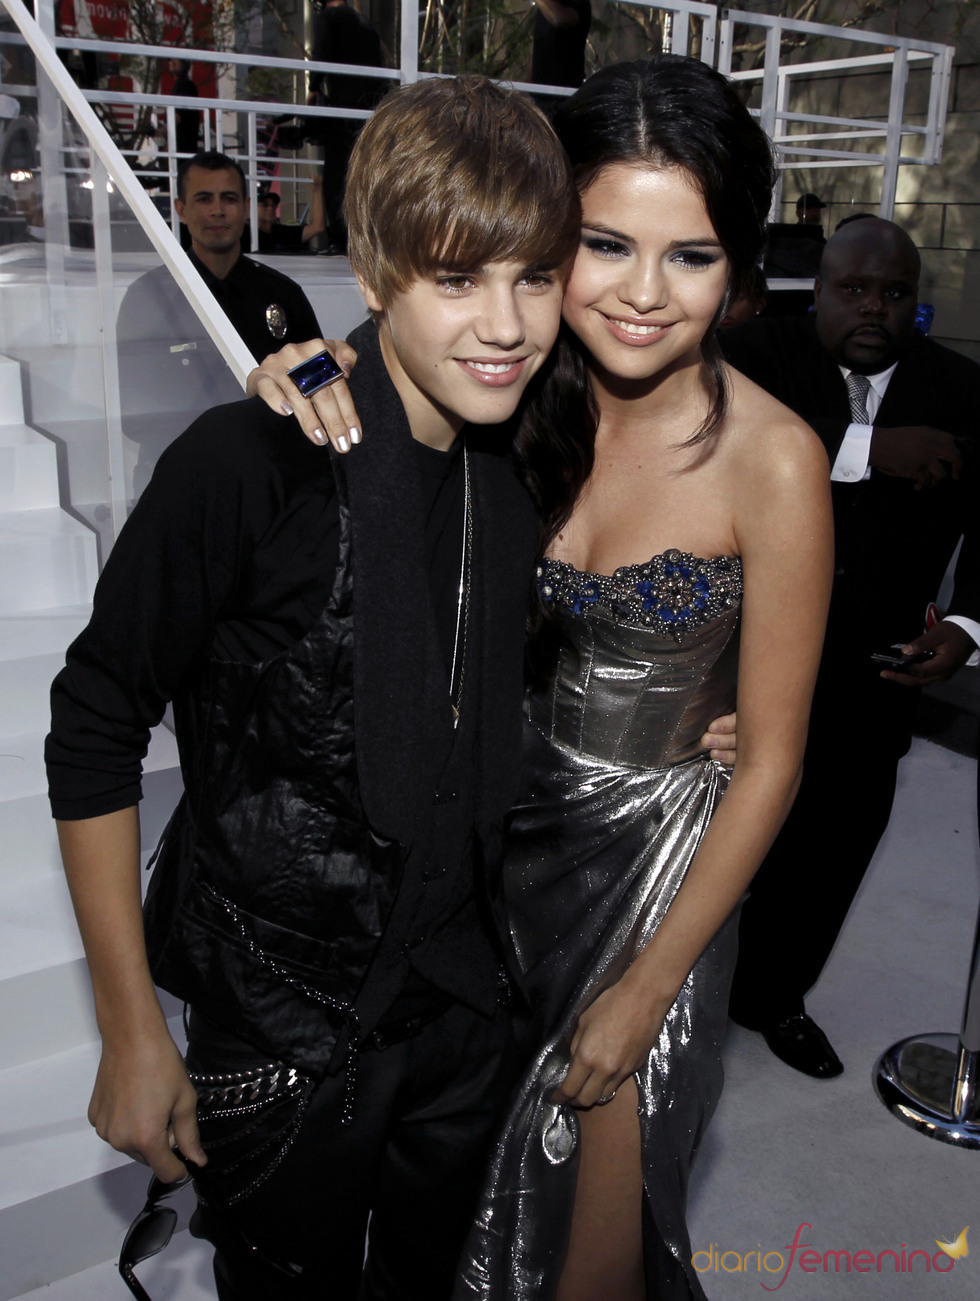 Selena Gomez in 2010 MTV Video Music Awards